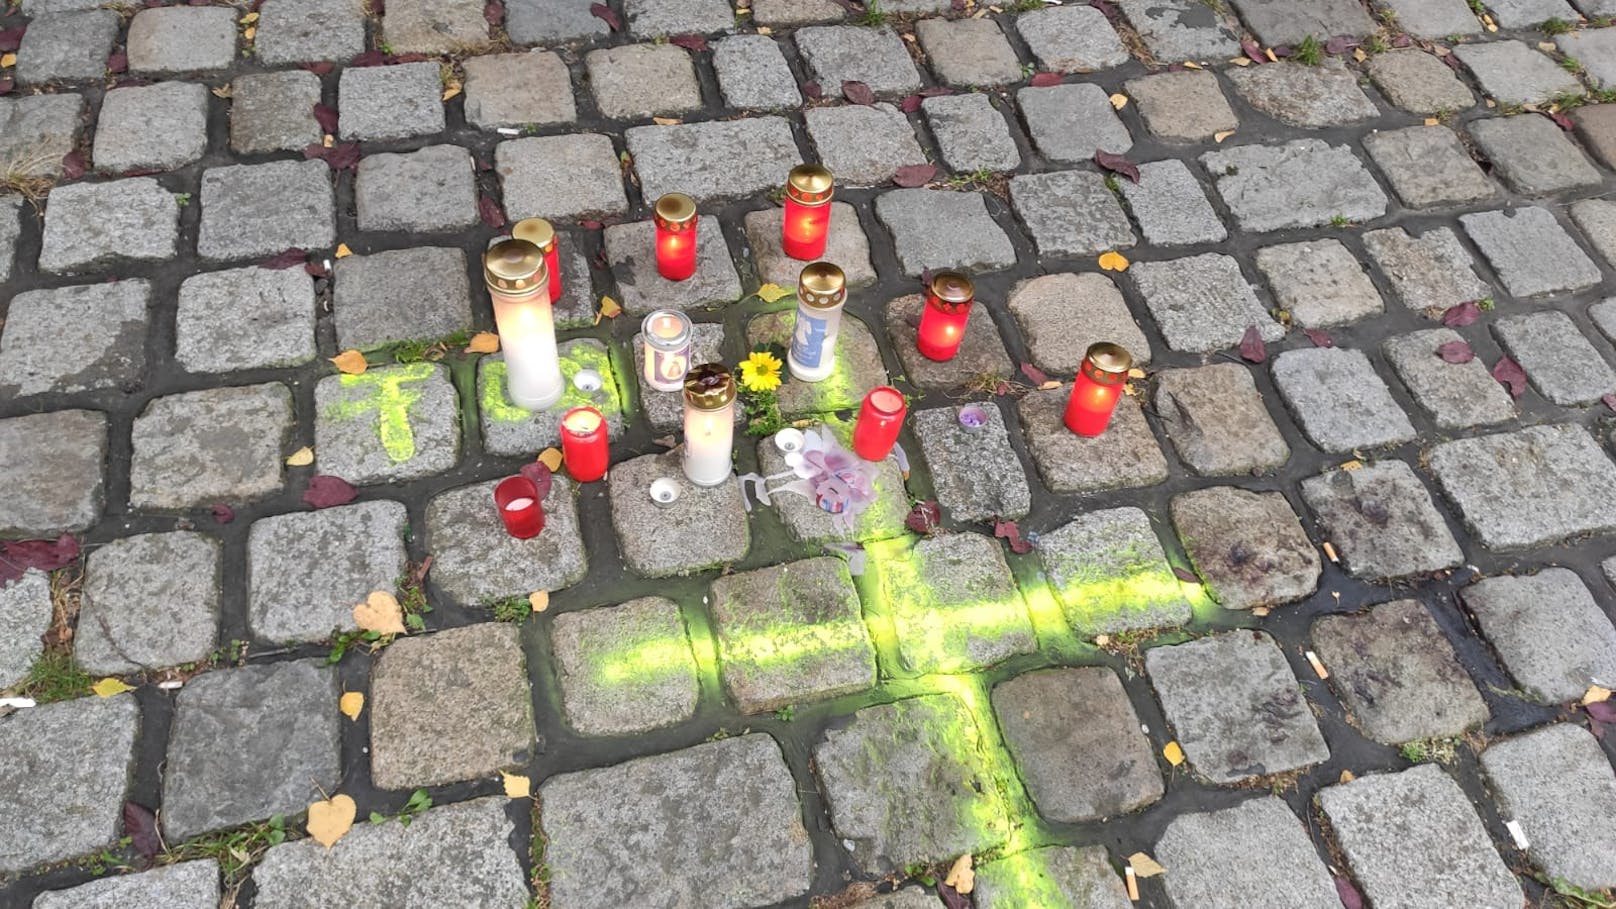 Trauer um Wien-Attentäter